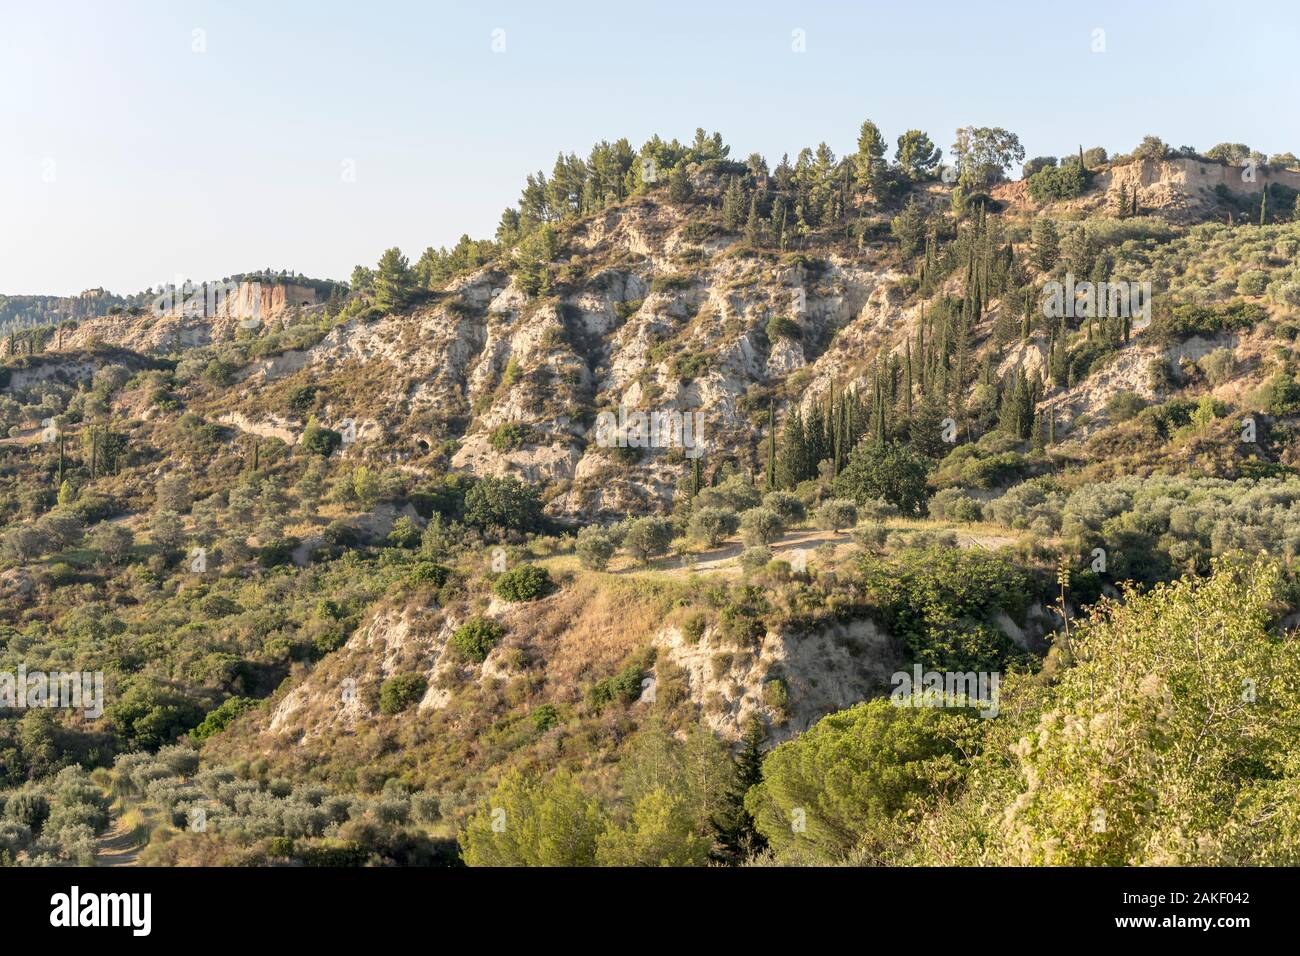 Paysage du sud de l'Apennin à la végétation méditerranéenne luxuriante sur ravin, tourné en été lumineux lumière près de Roccanova, Potenza, Basilicate, Italie Banque D'Images